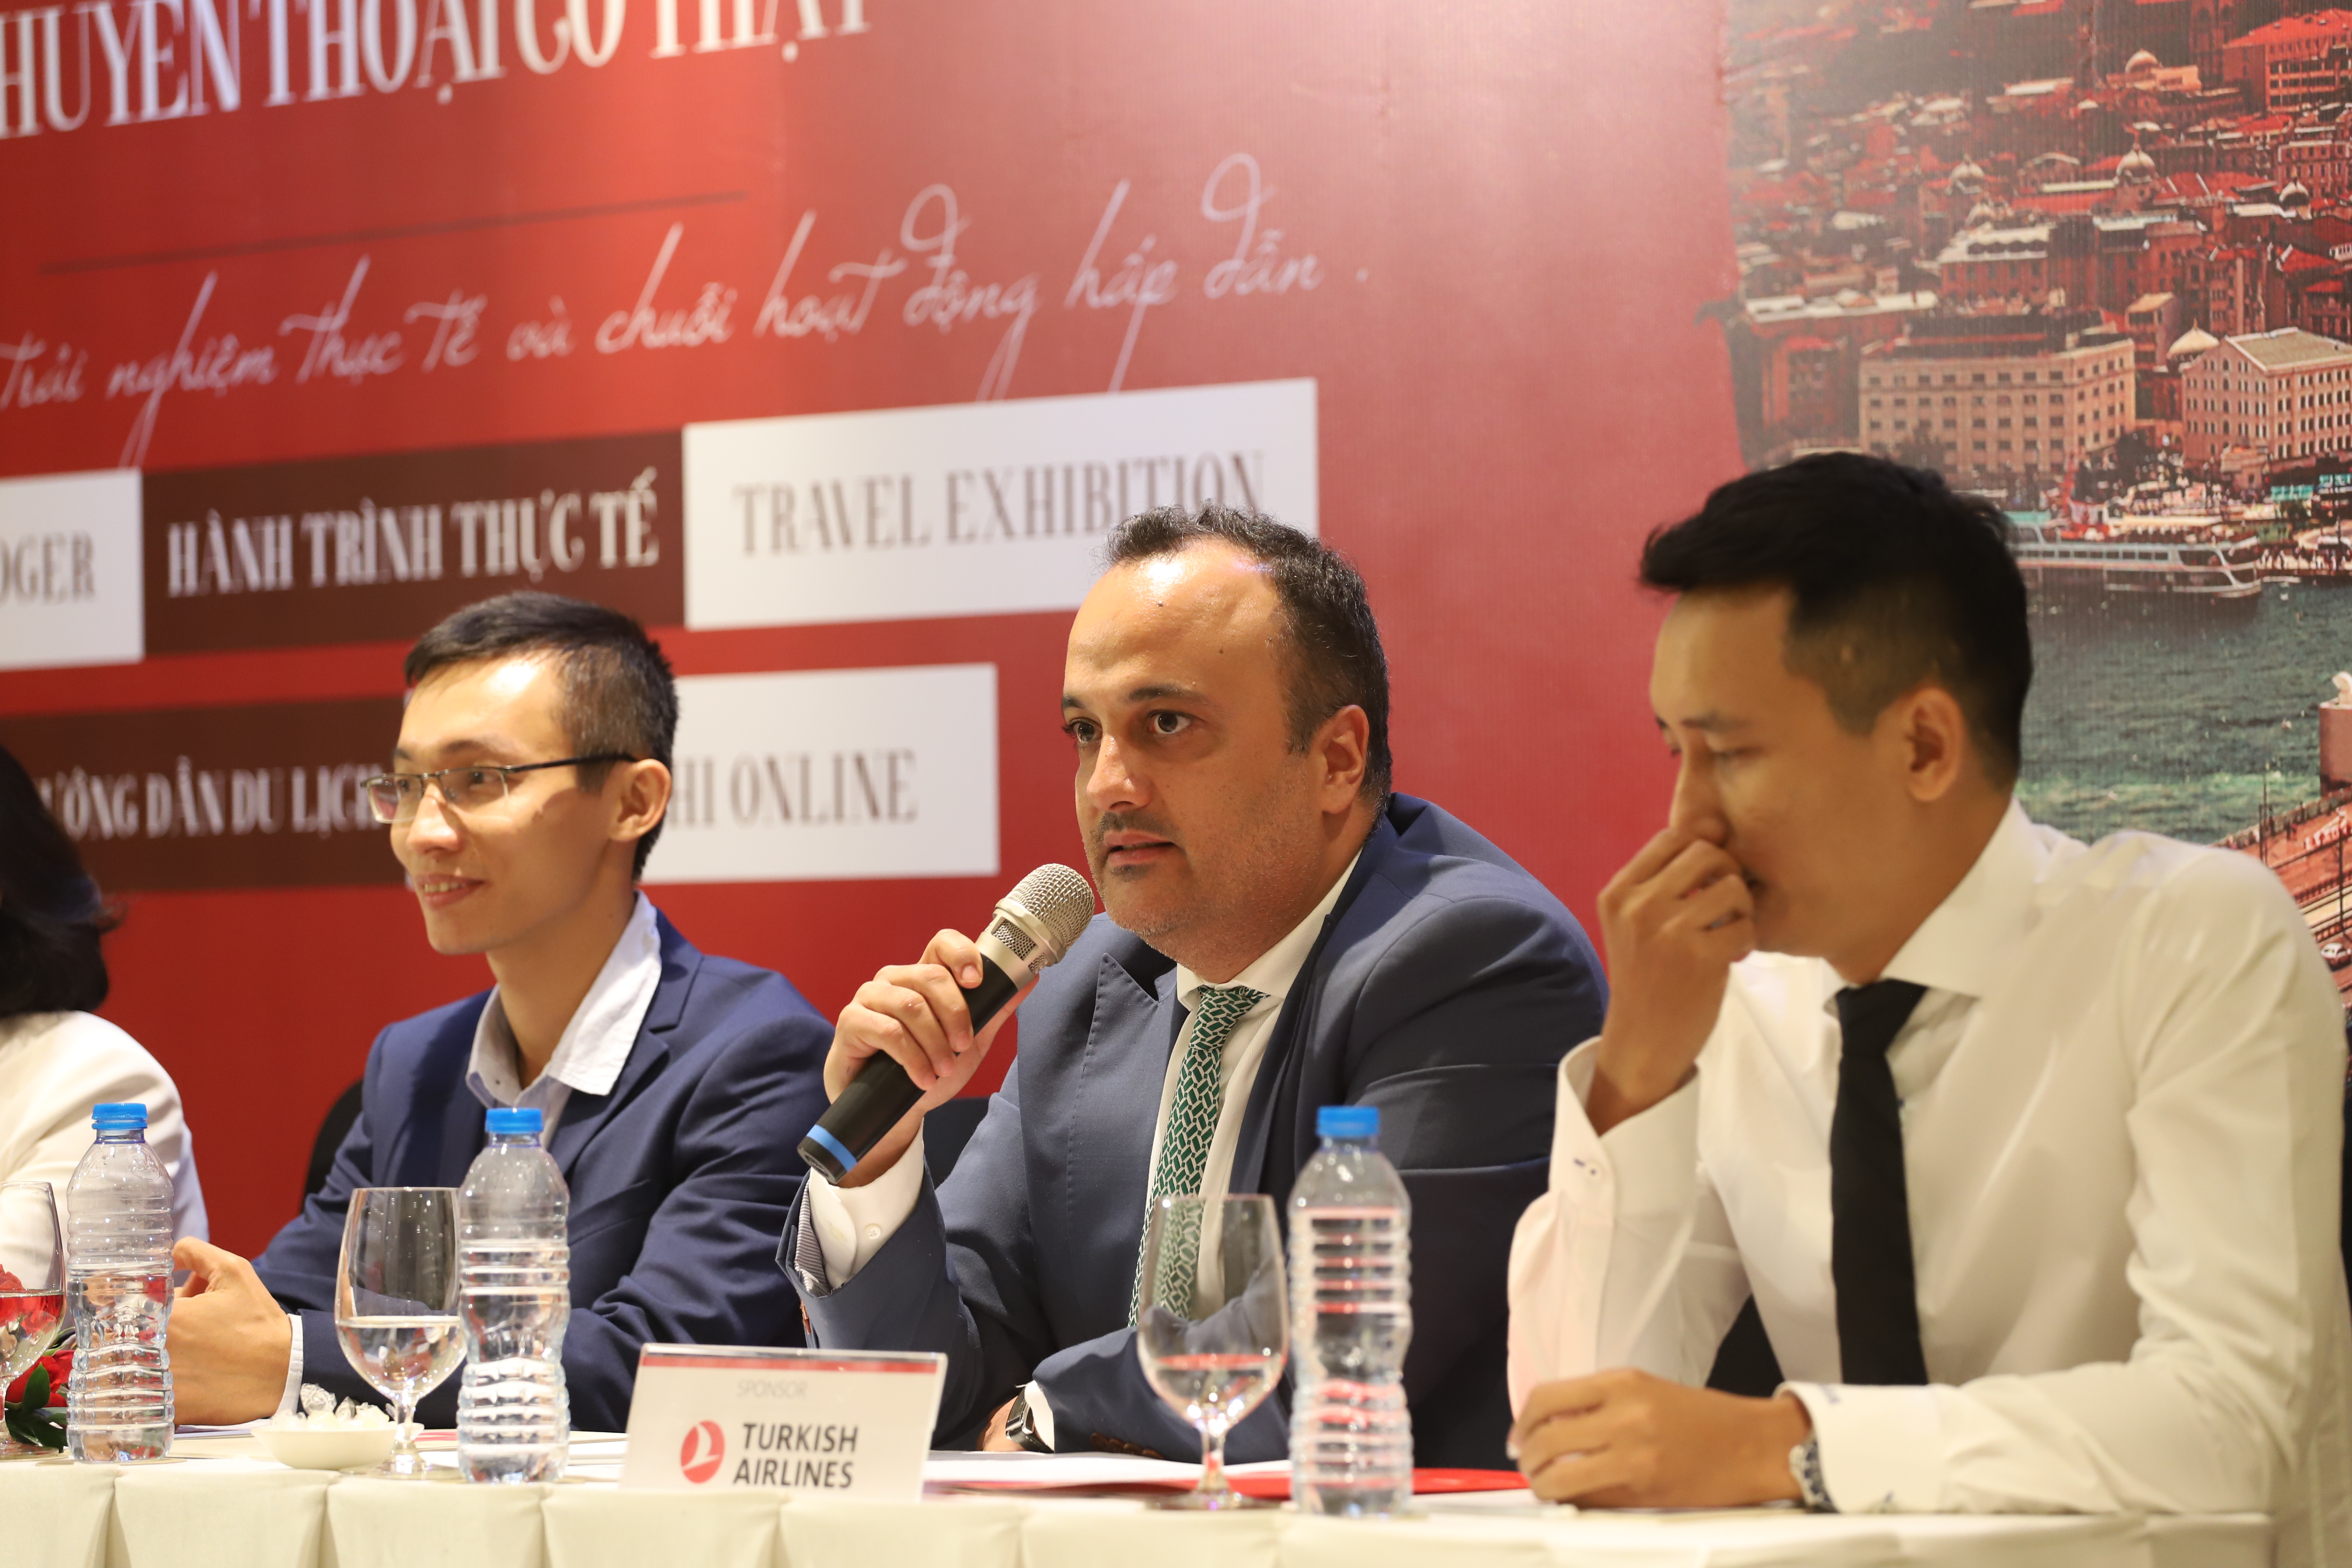 Giám đốc Turkish Airlines Việt Nam - ông Erkan Ince phát biểu tại sự kiện.